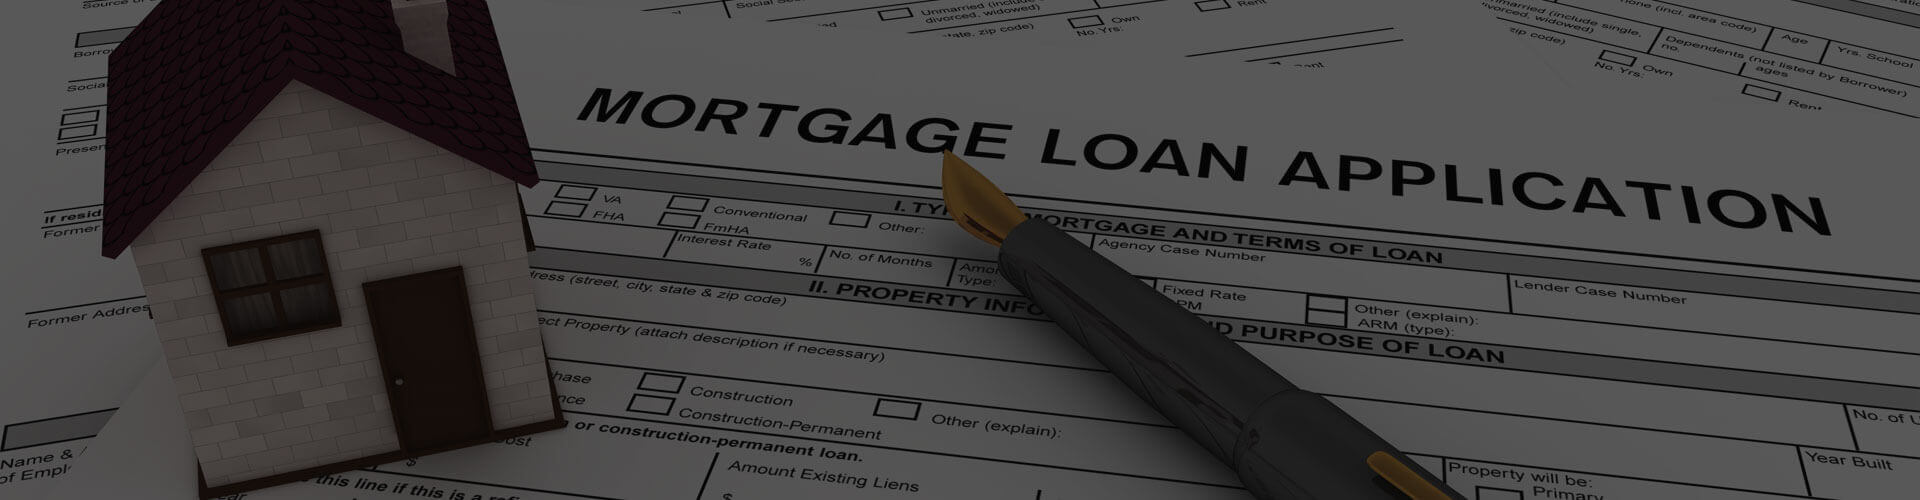 loan processor sente mortgage